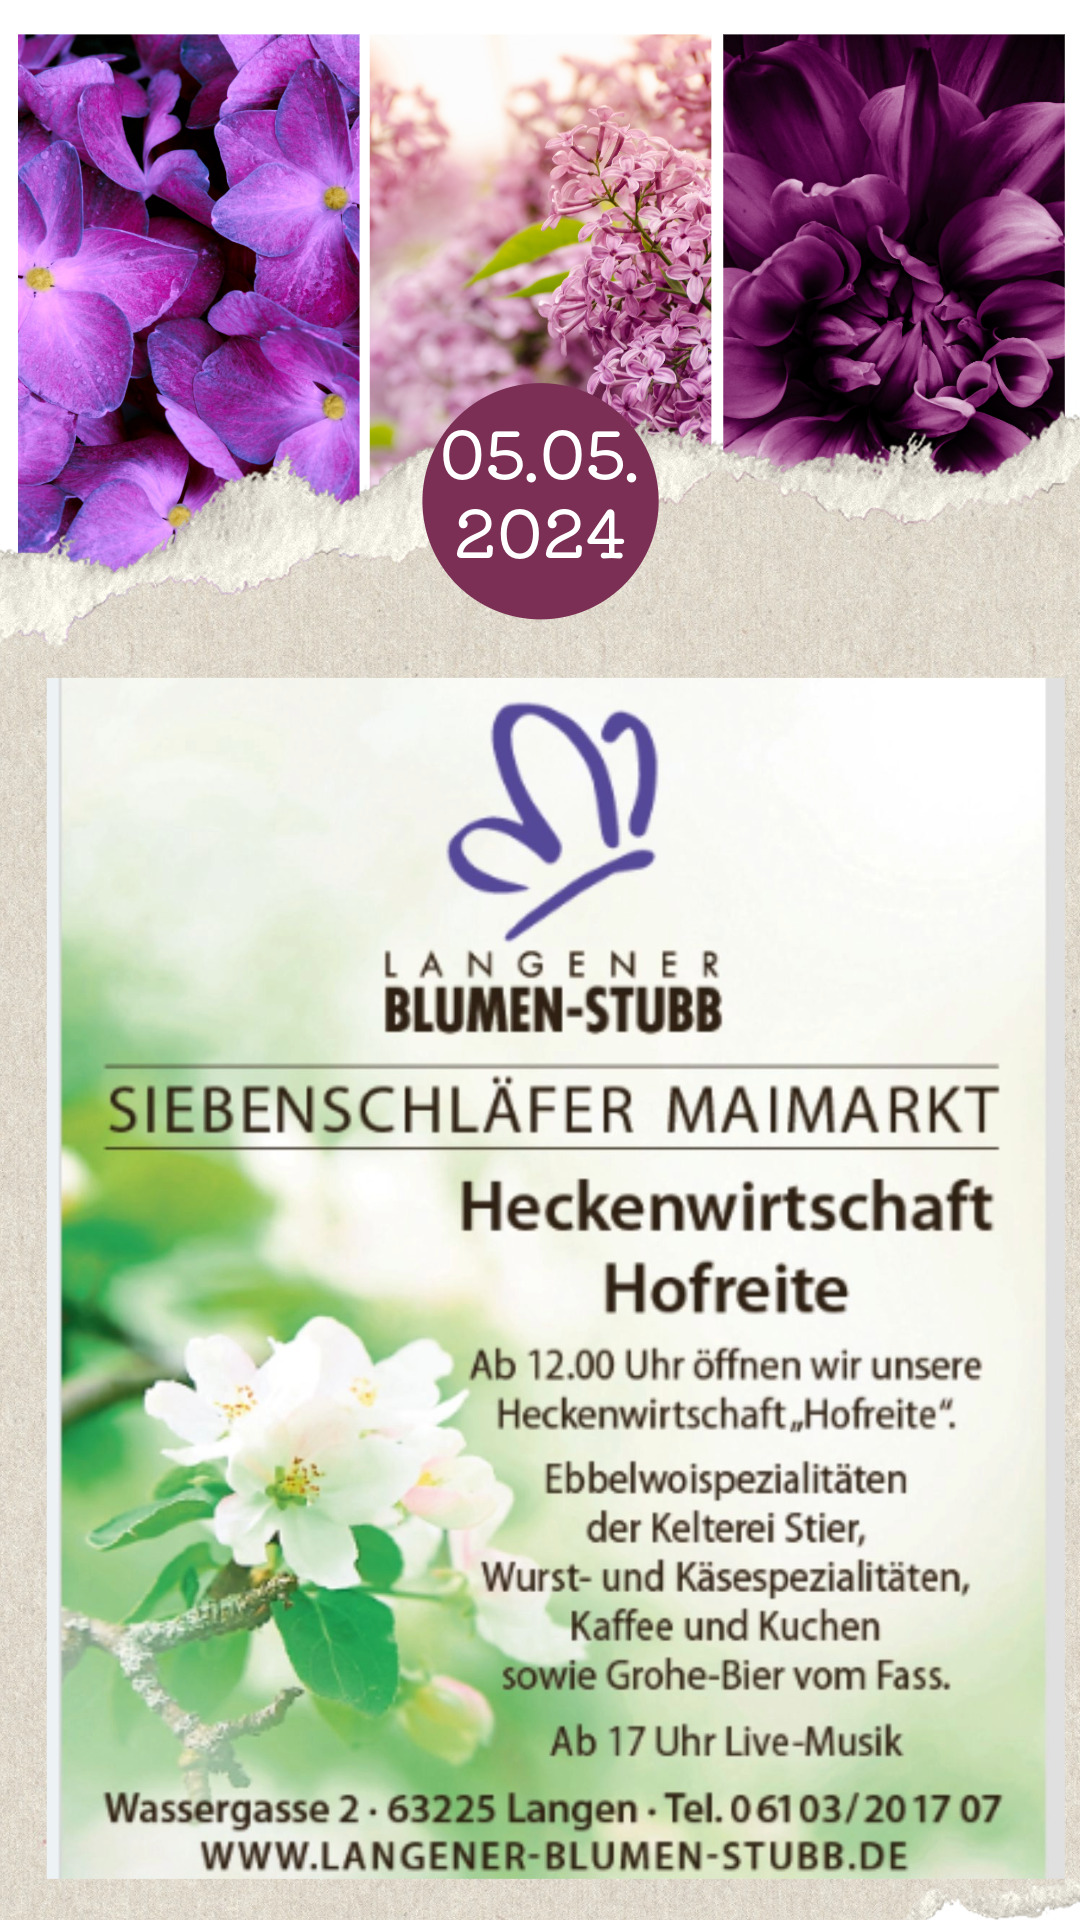 Langener-Blumen-Stubb maimarkt